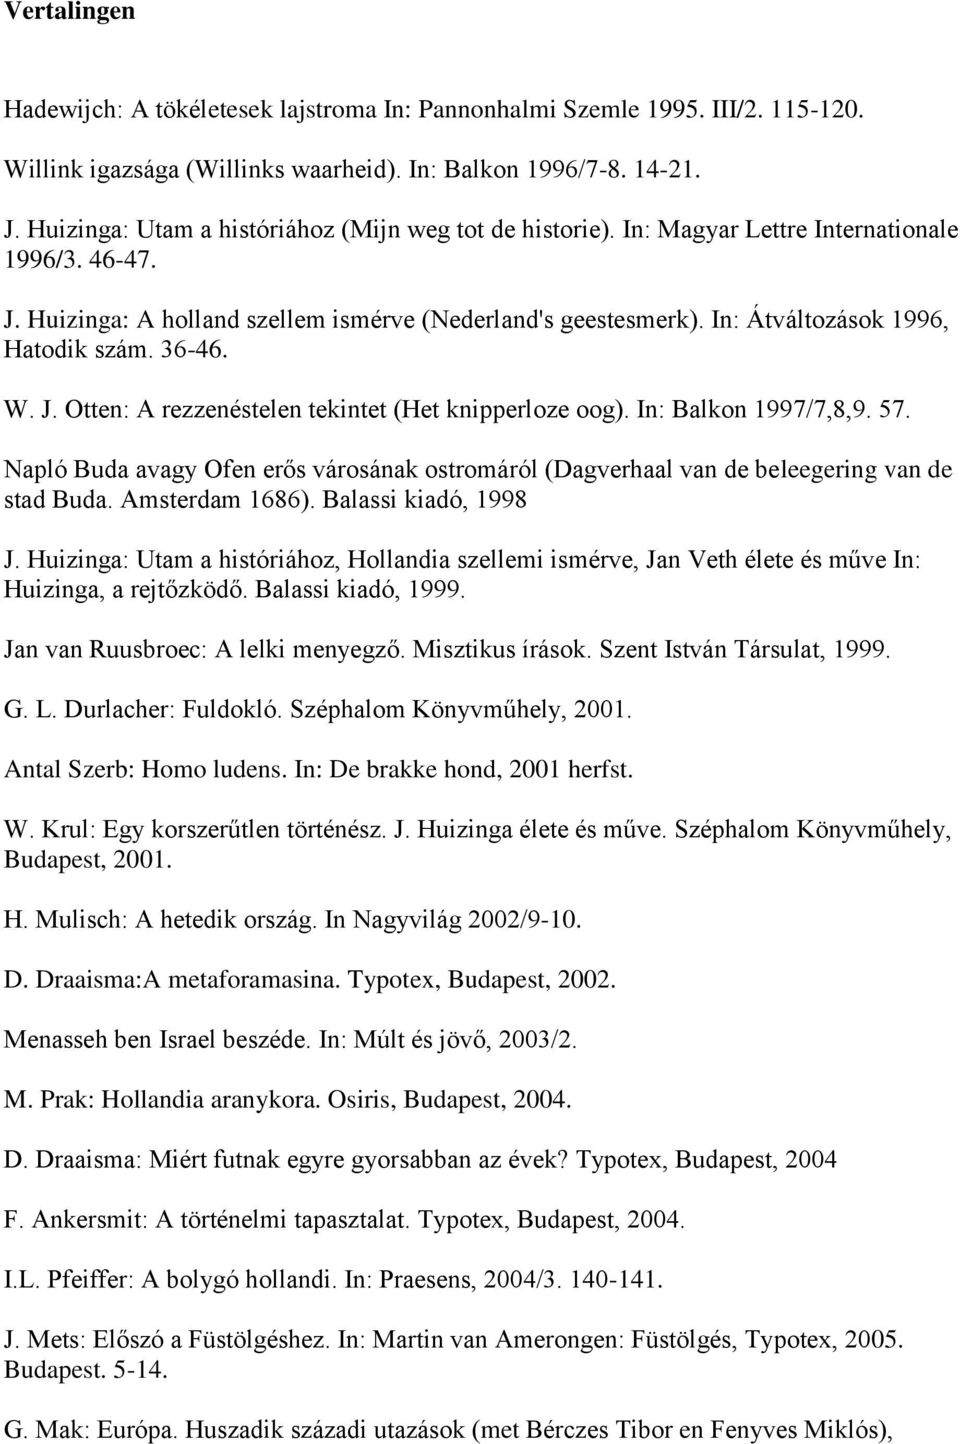 In: Átváltozások 1996, Hatodik szám. 36-46. W. J. Otten: A rezzenéstelen tekintet (Het knipperloze oog). In: Balkon 1997/7,8,9. 57.